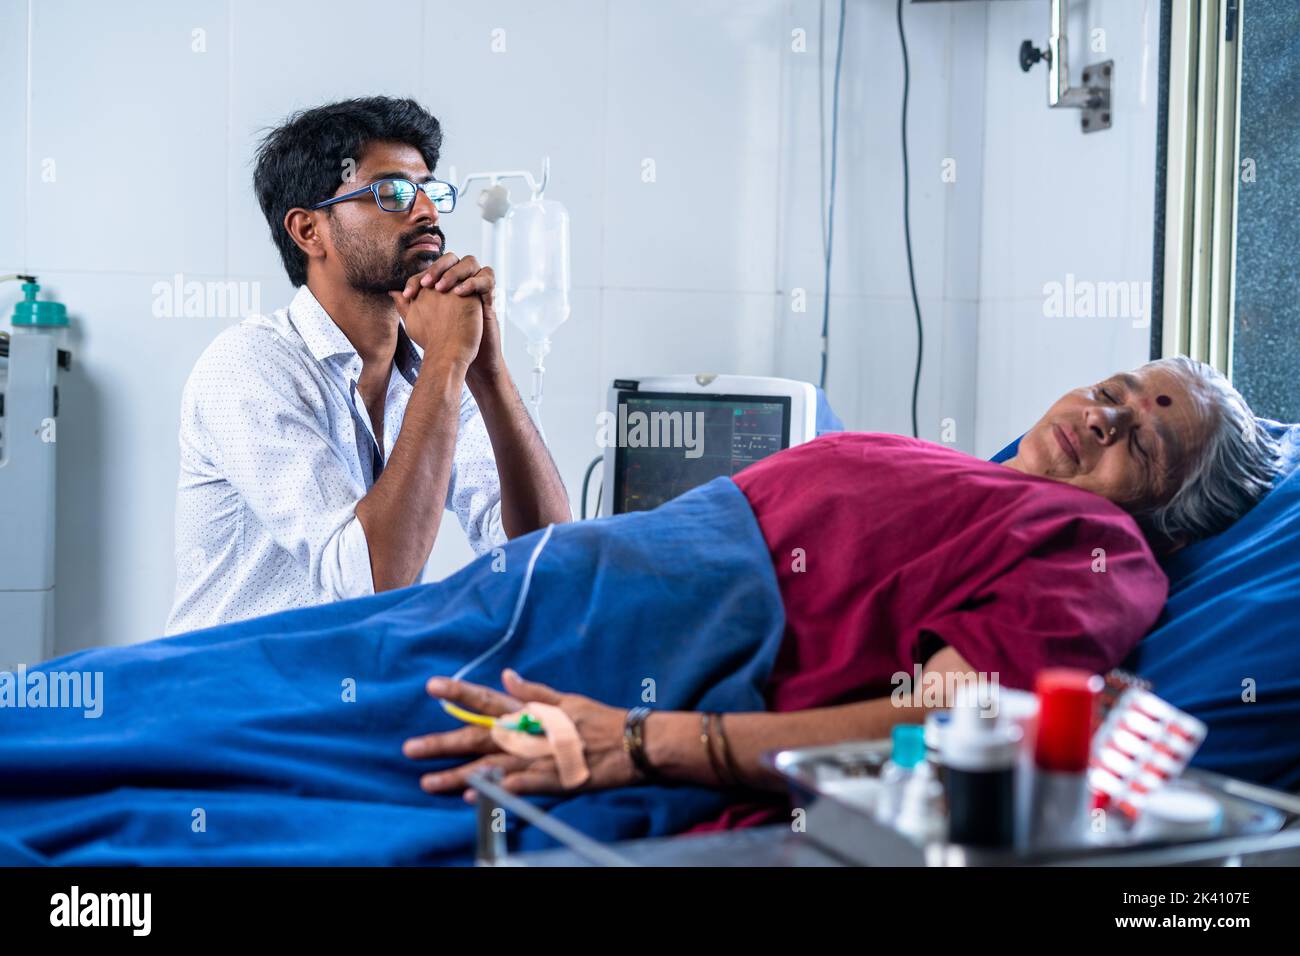 Preocupado hijo indio rezando a dios por la madre enferma para acelerar la recuperación de la salud en el hospital - concepto de atención médica, vínculo incondicional y tratamiento. Foto de stock